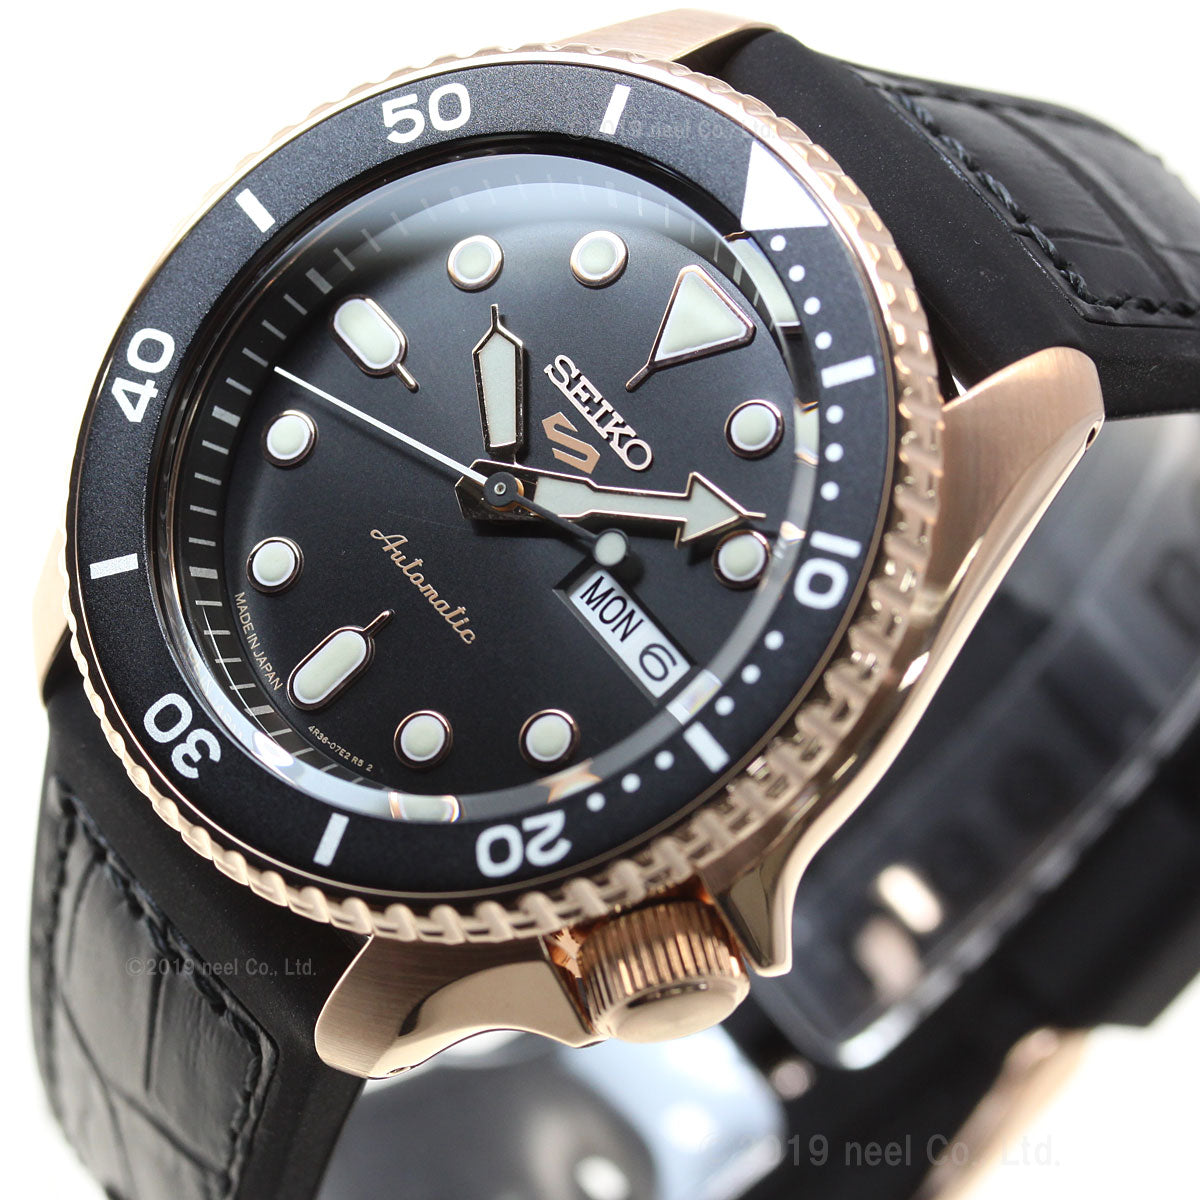 セイコー5 スポーツ SEIKO 5 SPORTS 自動巻き メカニカル 流通限定モデル 腕時計 メンズ セイコーファイブ スペシャリスト Specialist SBSA028